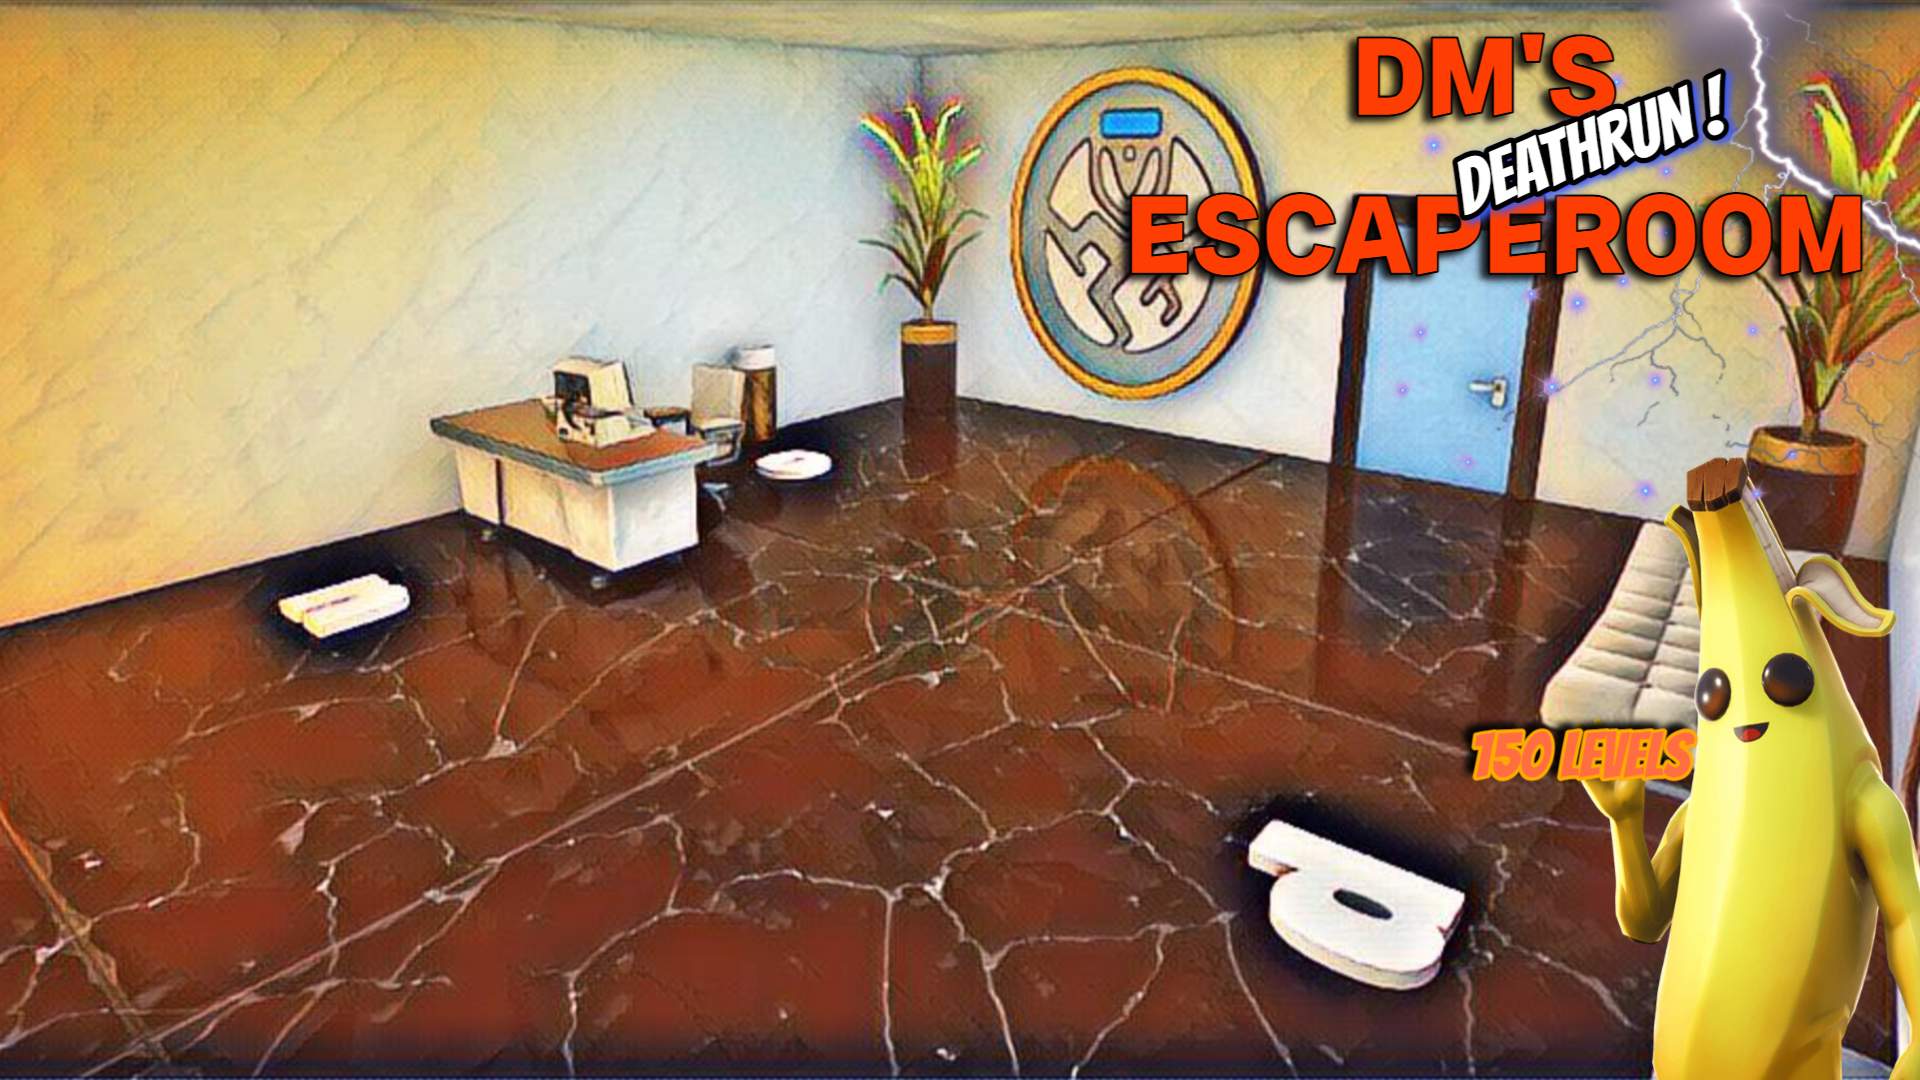 DM's Escape Room - DeathRun image 2